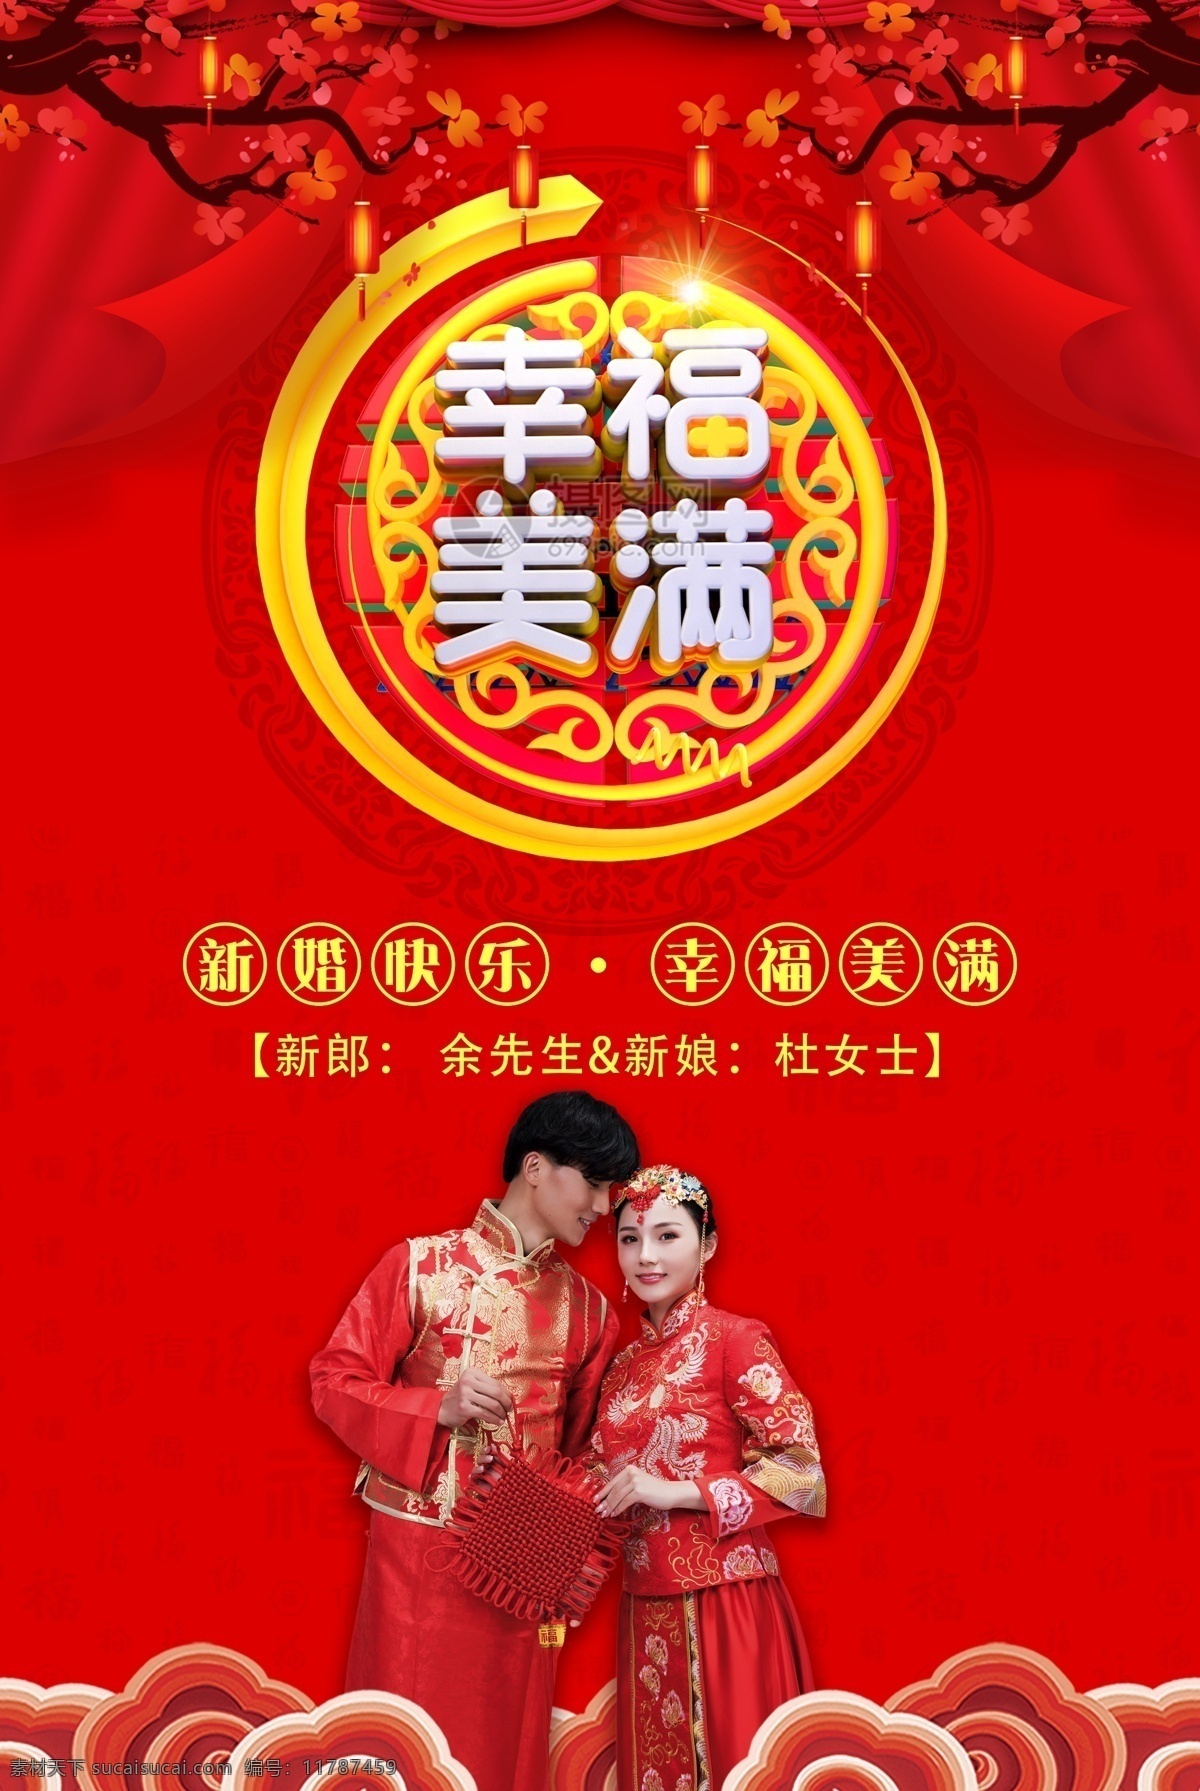 中国 红 幸福 美满 婚礼 婚庆 海报 中国红 中式 婚庆海报 婚礼海报 立体字 喜庆 结婚 祝福 新郎 新娘